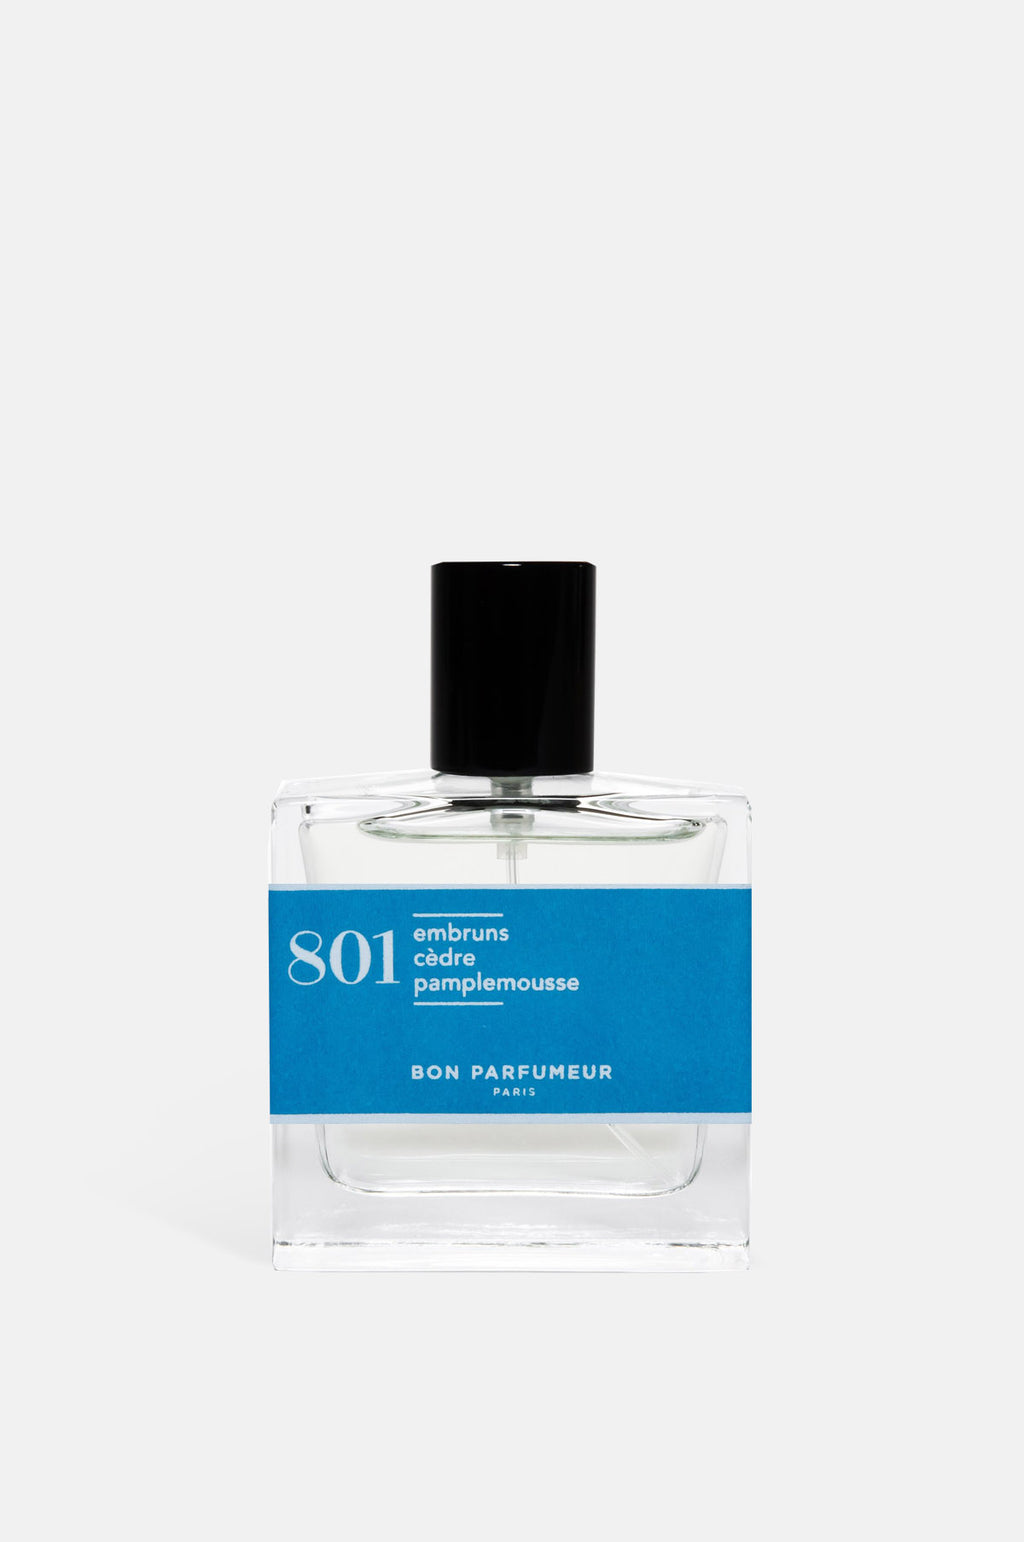 Bon Parfumeur Eau de Parfum 801 – The Hambledon